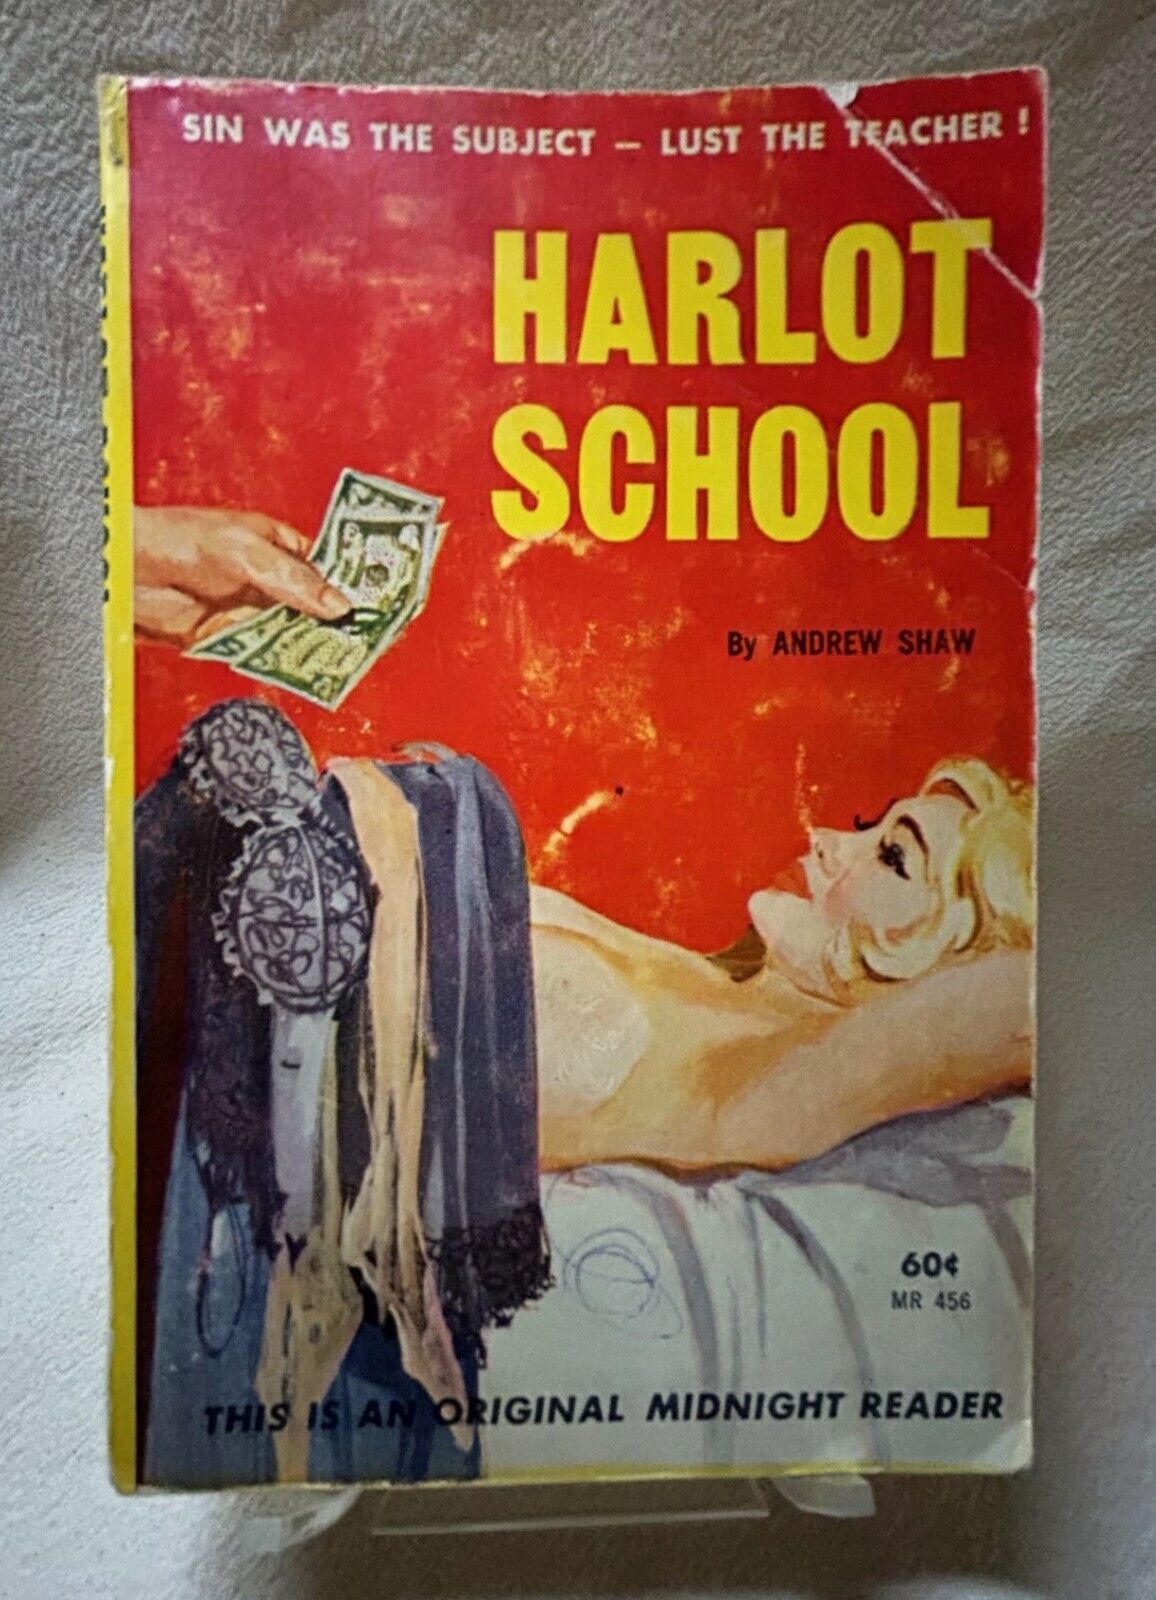 Harlot School 1962 Midnight Reader Vintage Pulp Fiction Paperback